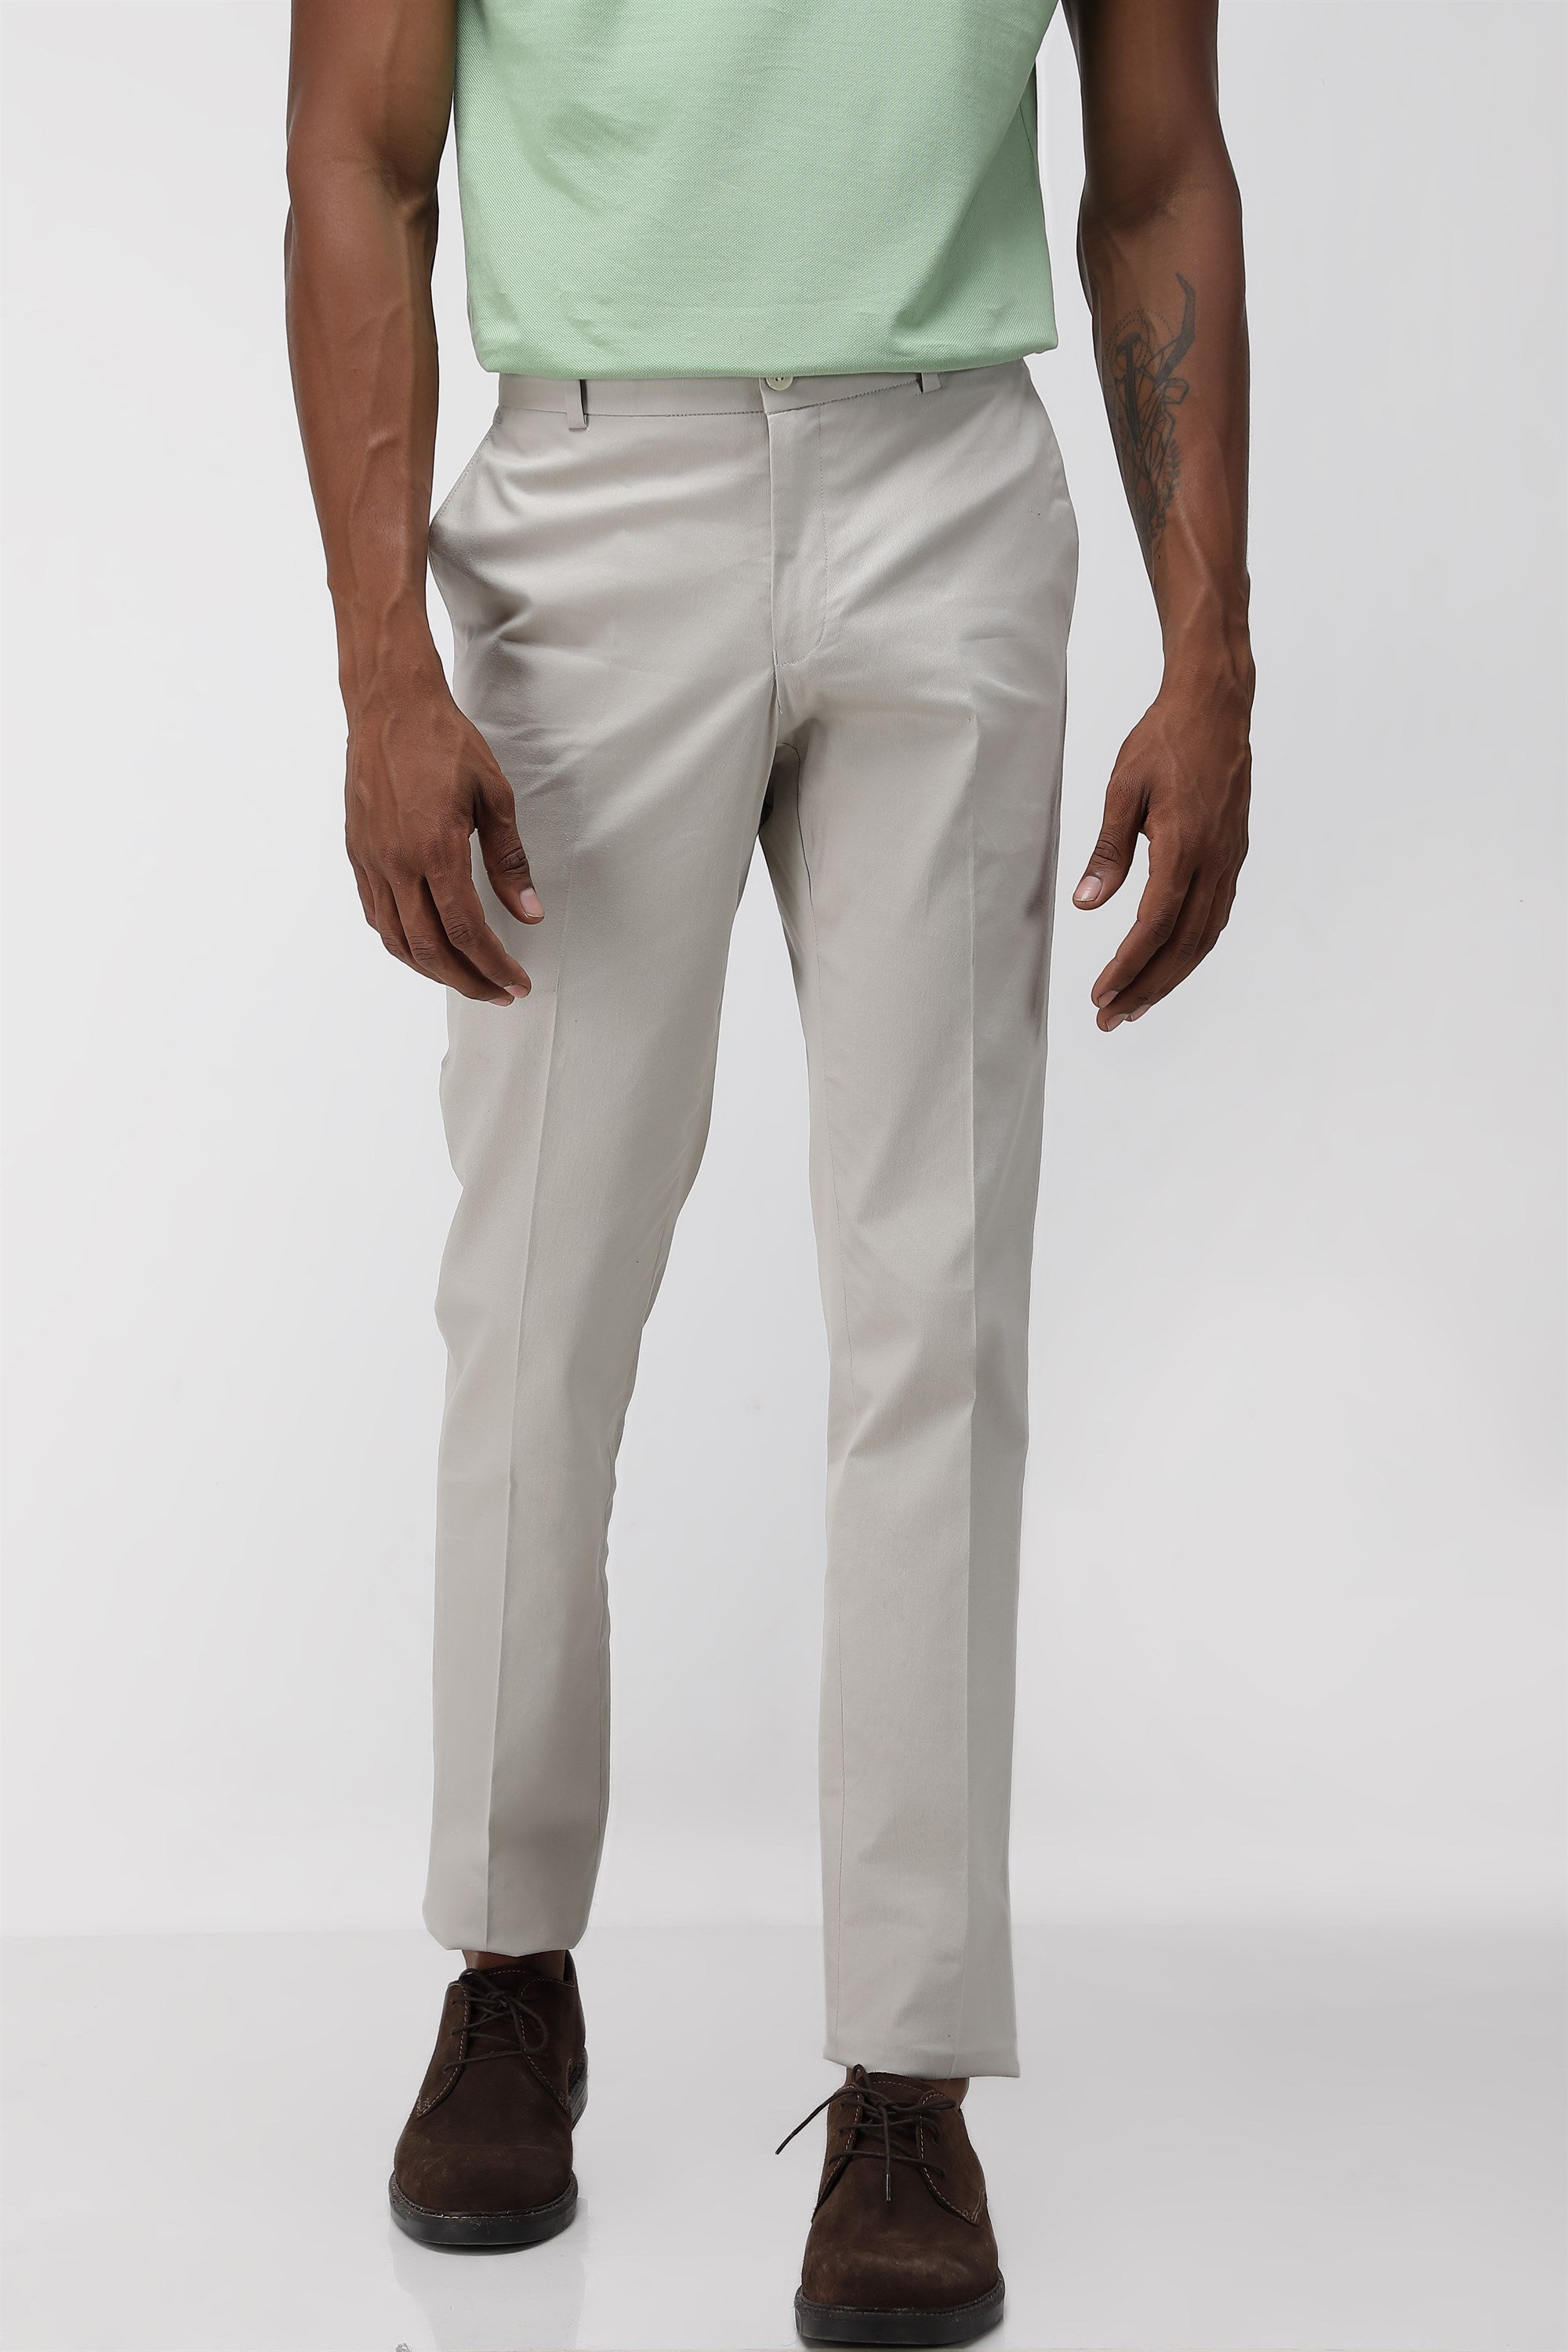 Buy Online|Spykar Men Brown Cotton Slim Fit Ankle Length Plain Trousers